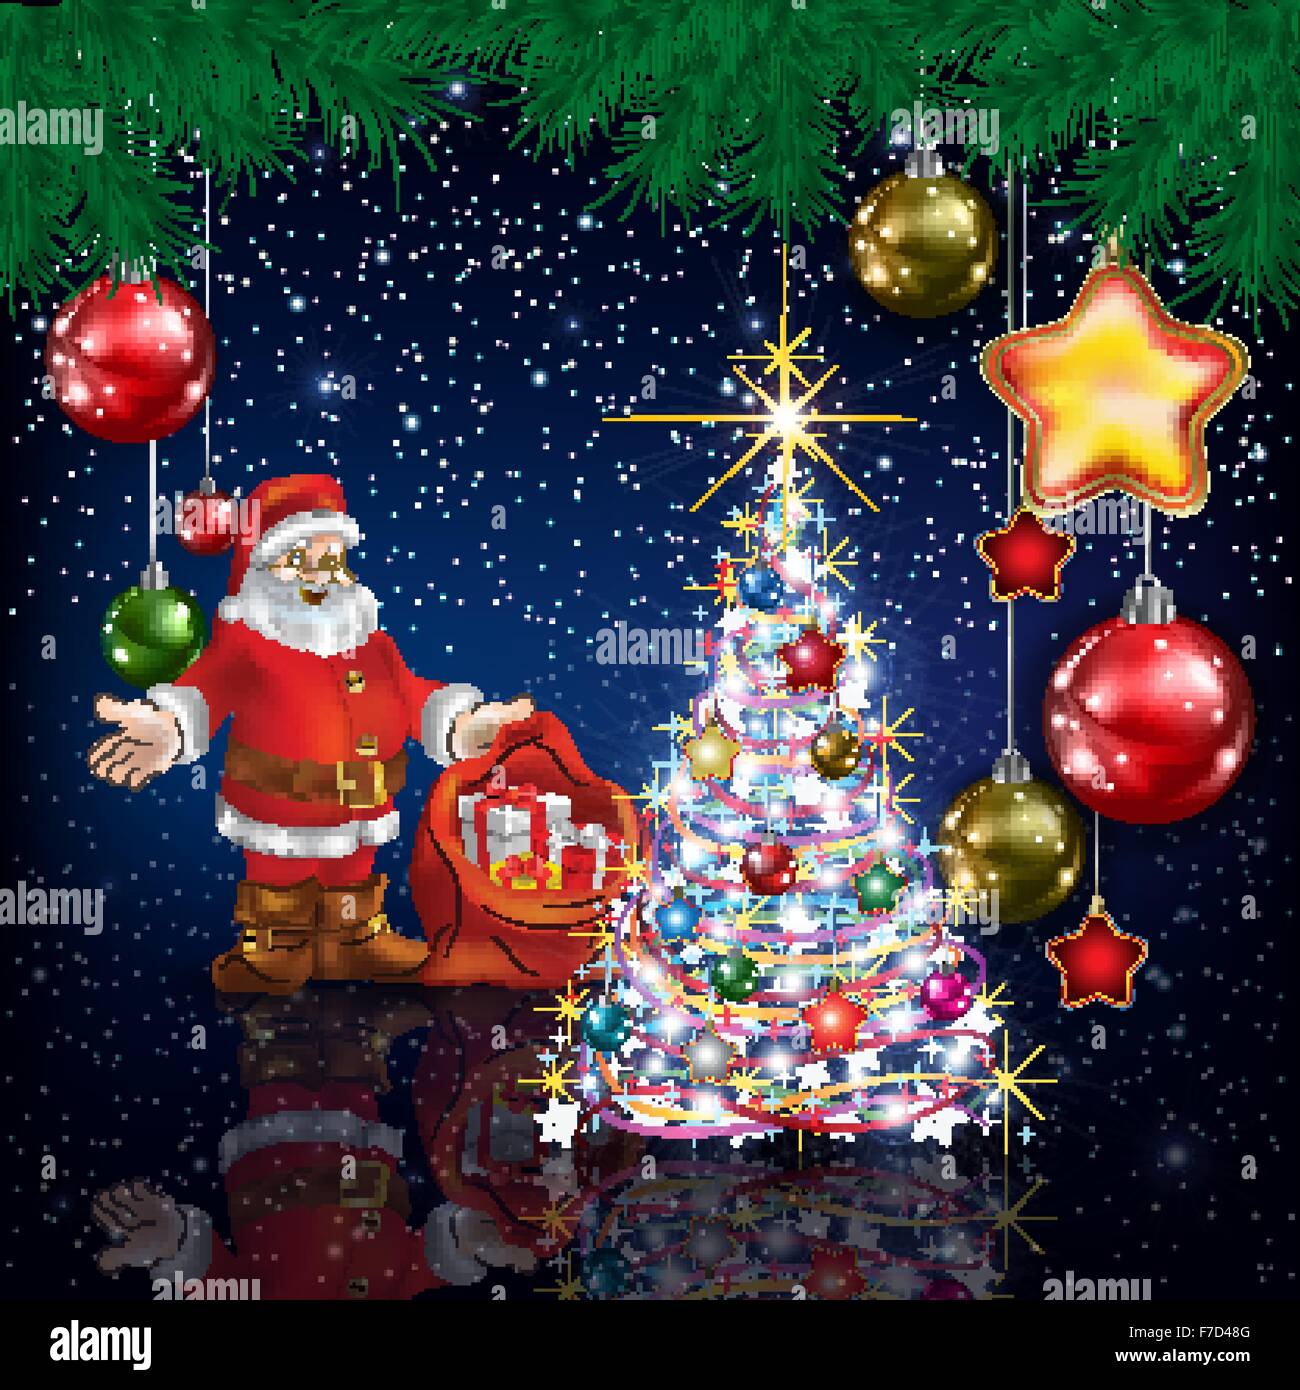 Feier blau Gruß mit Weihnachtsmann und Weihnachtsbaum Stock Vektor